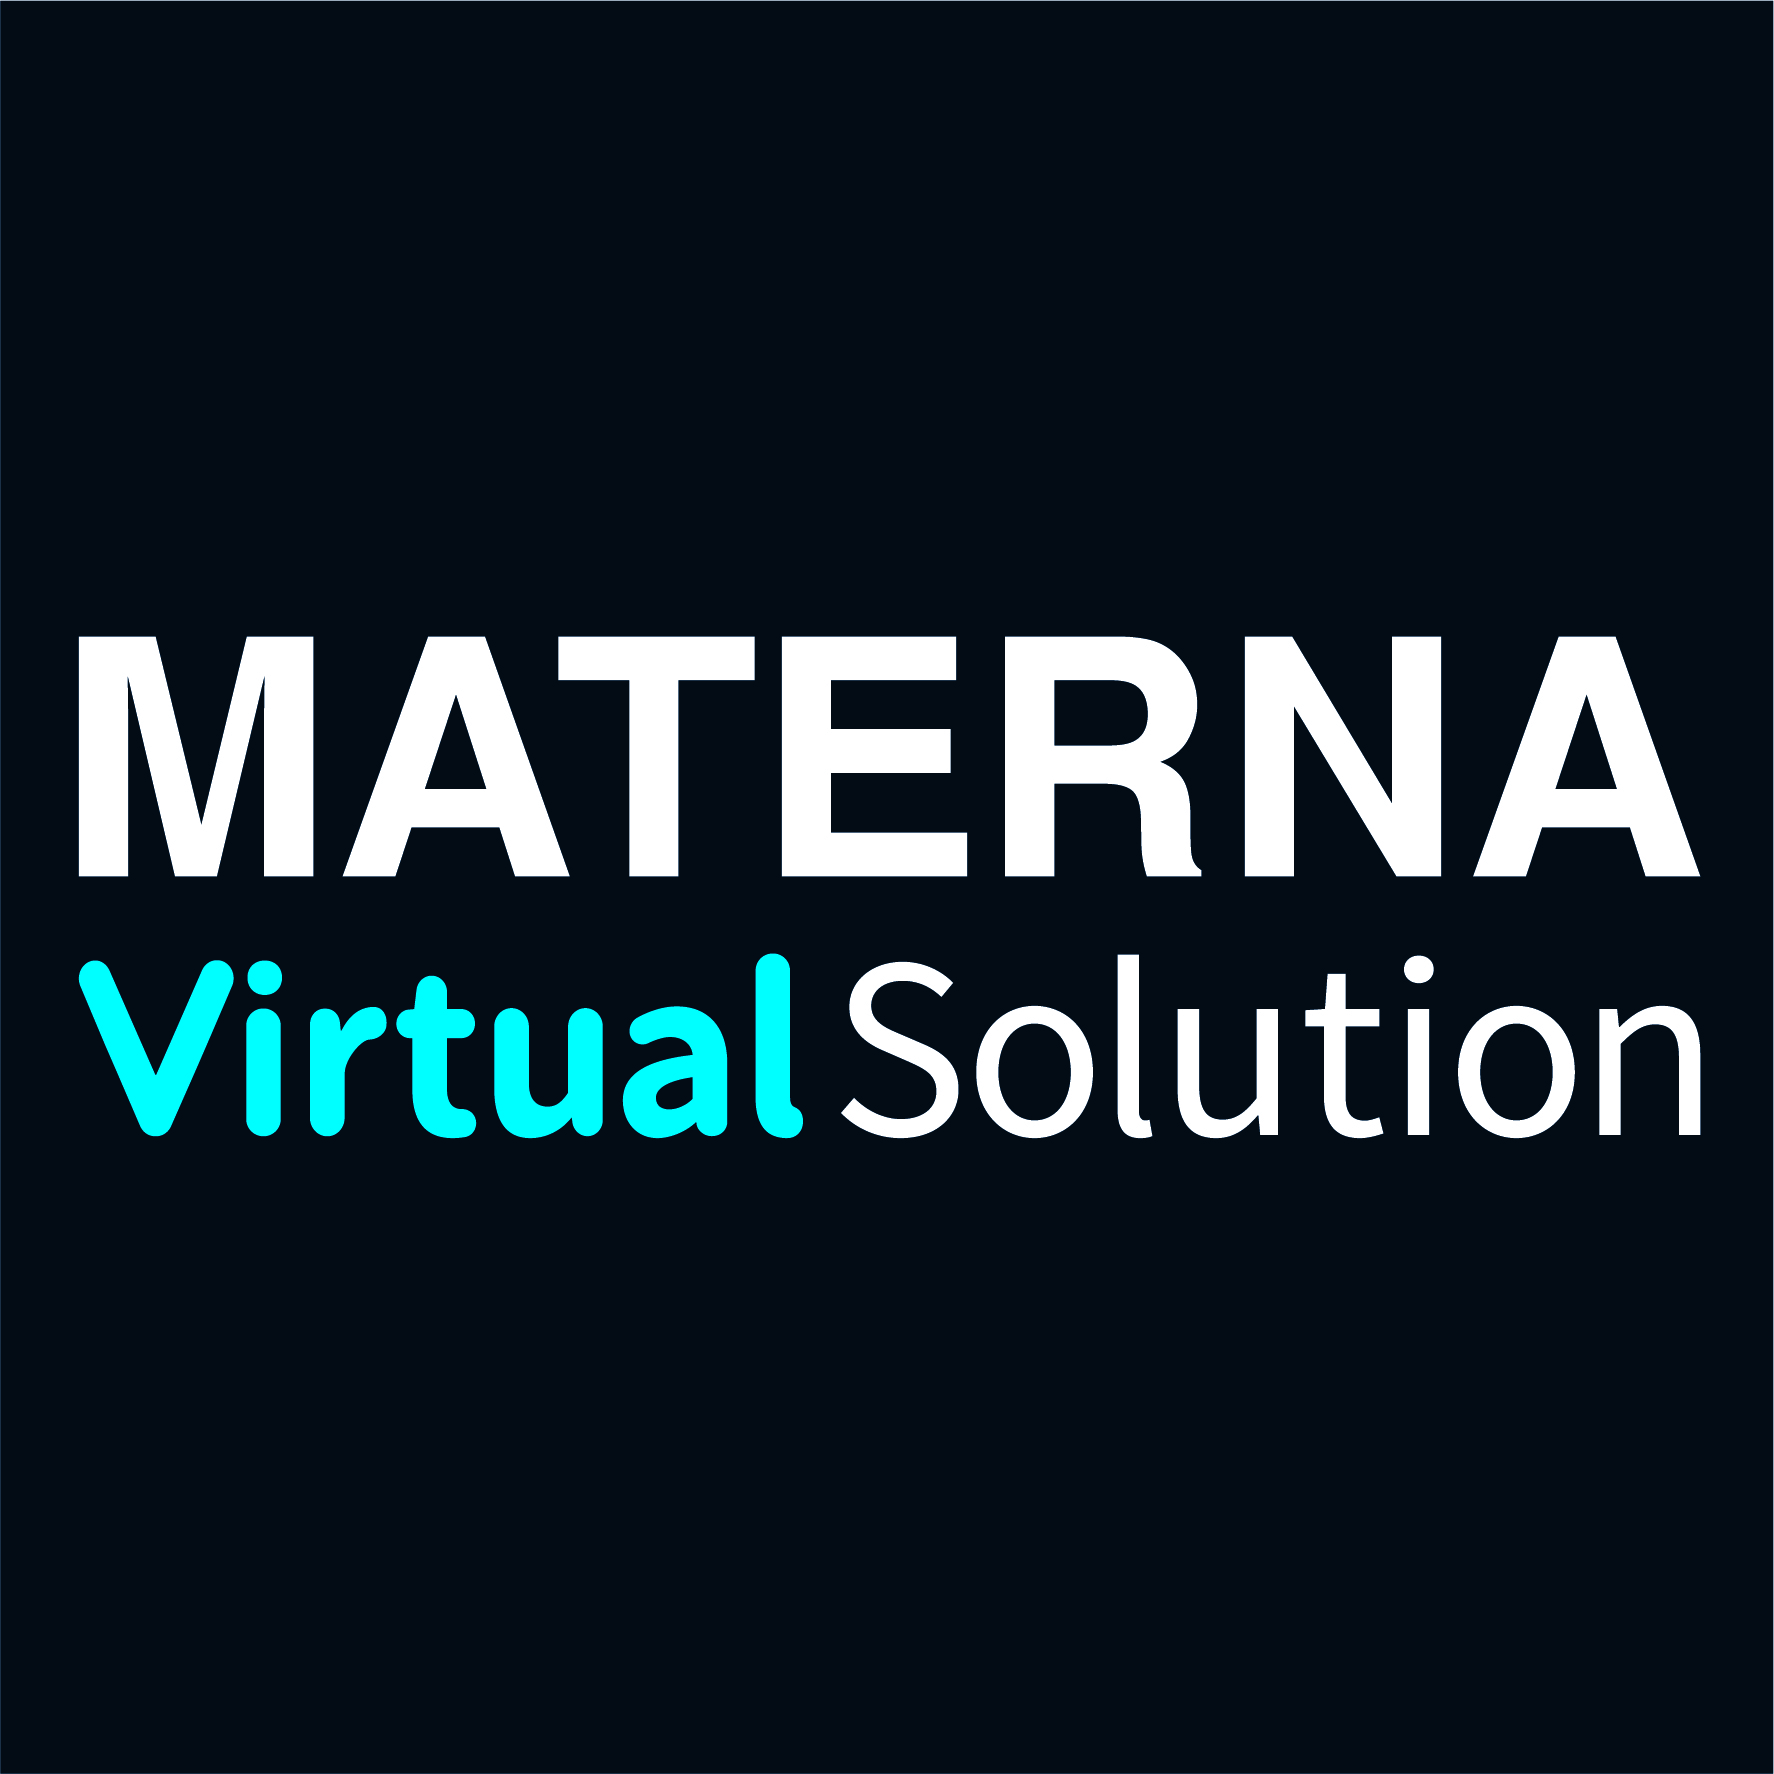 Materna_Virtual Solution_4 c_Quadrat